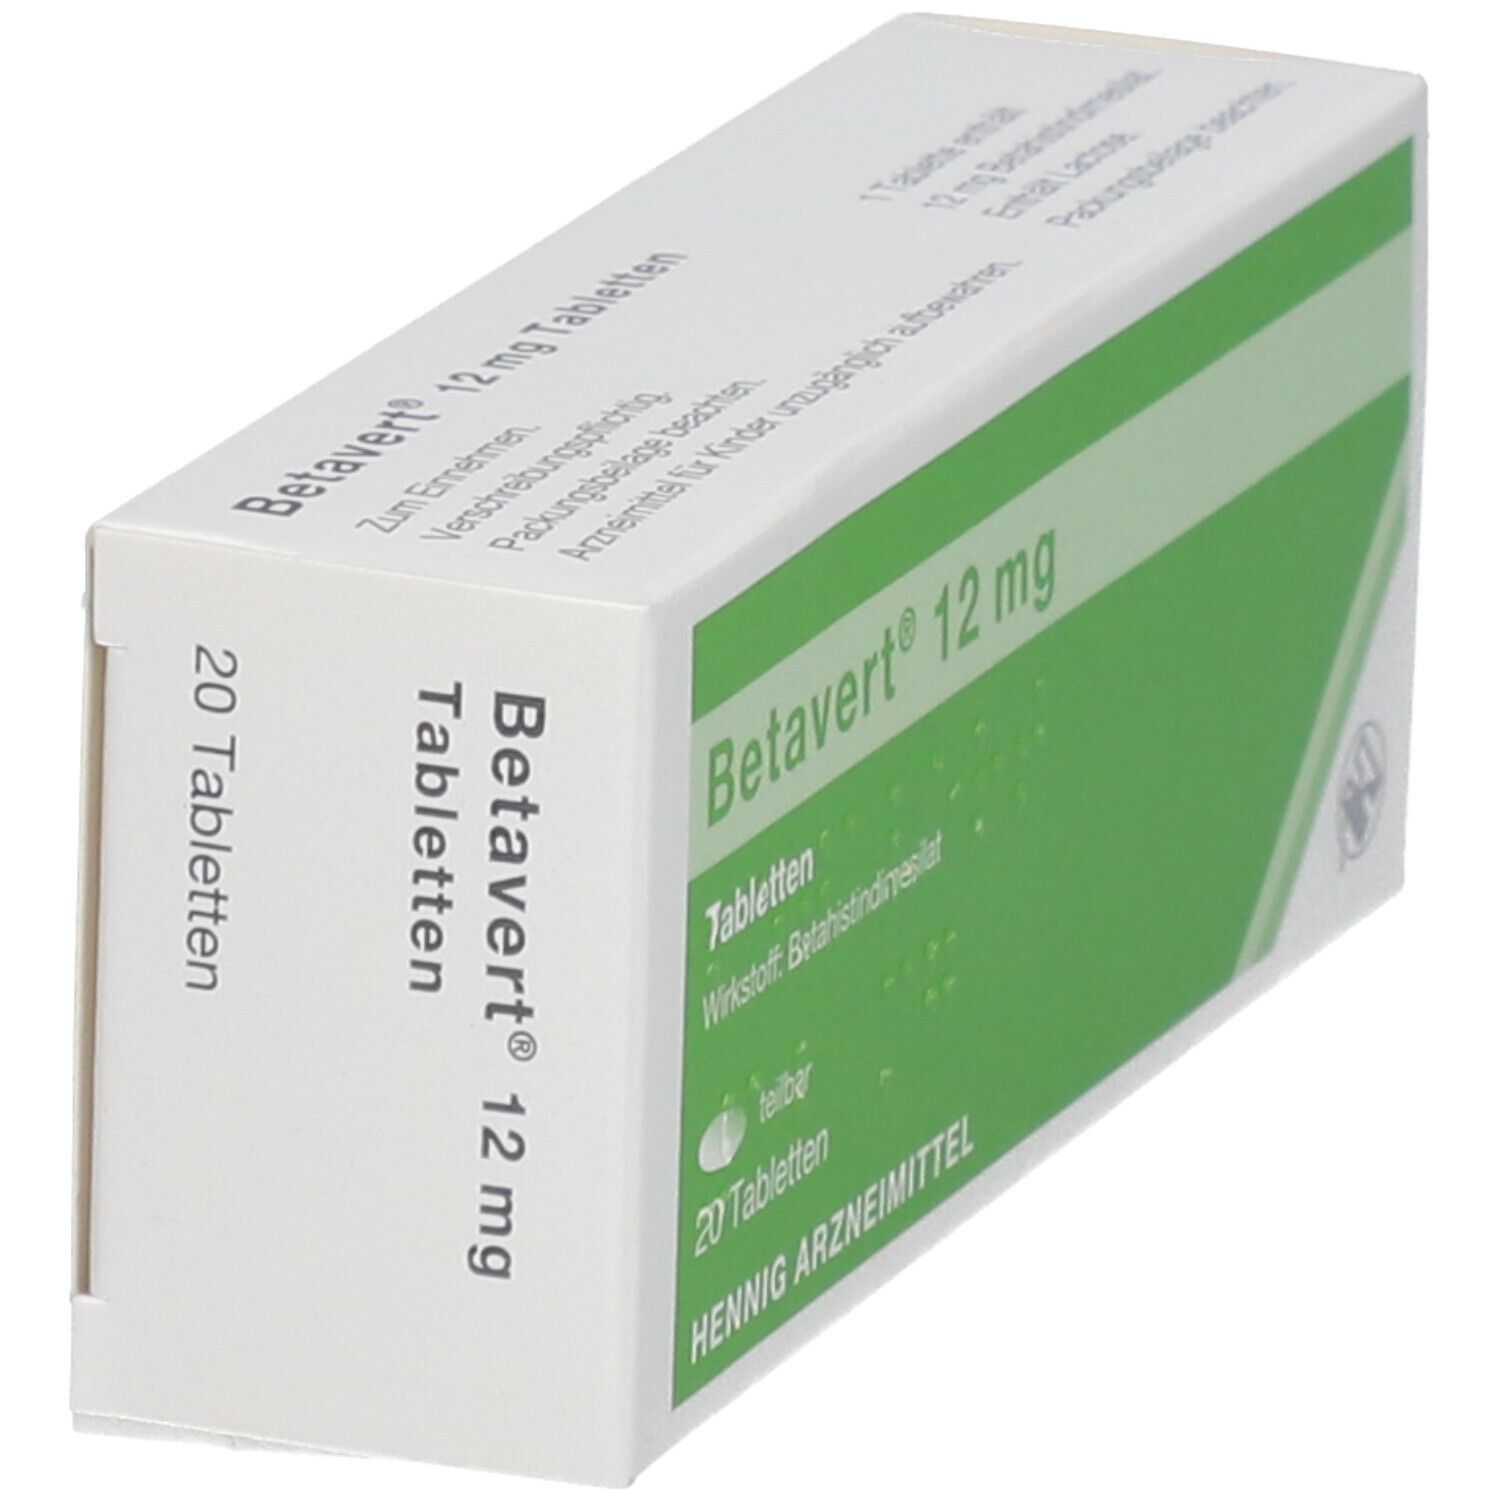 Betavert® 12 mg